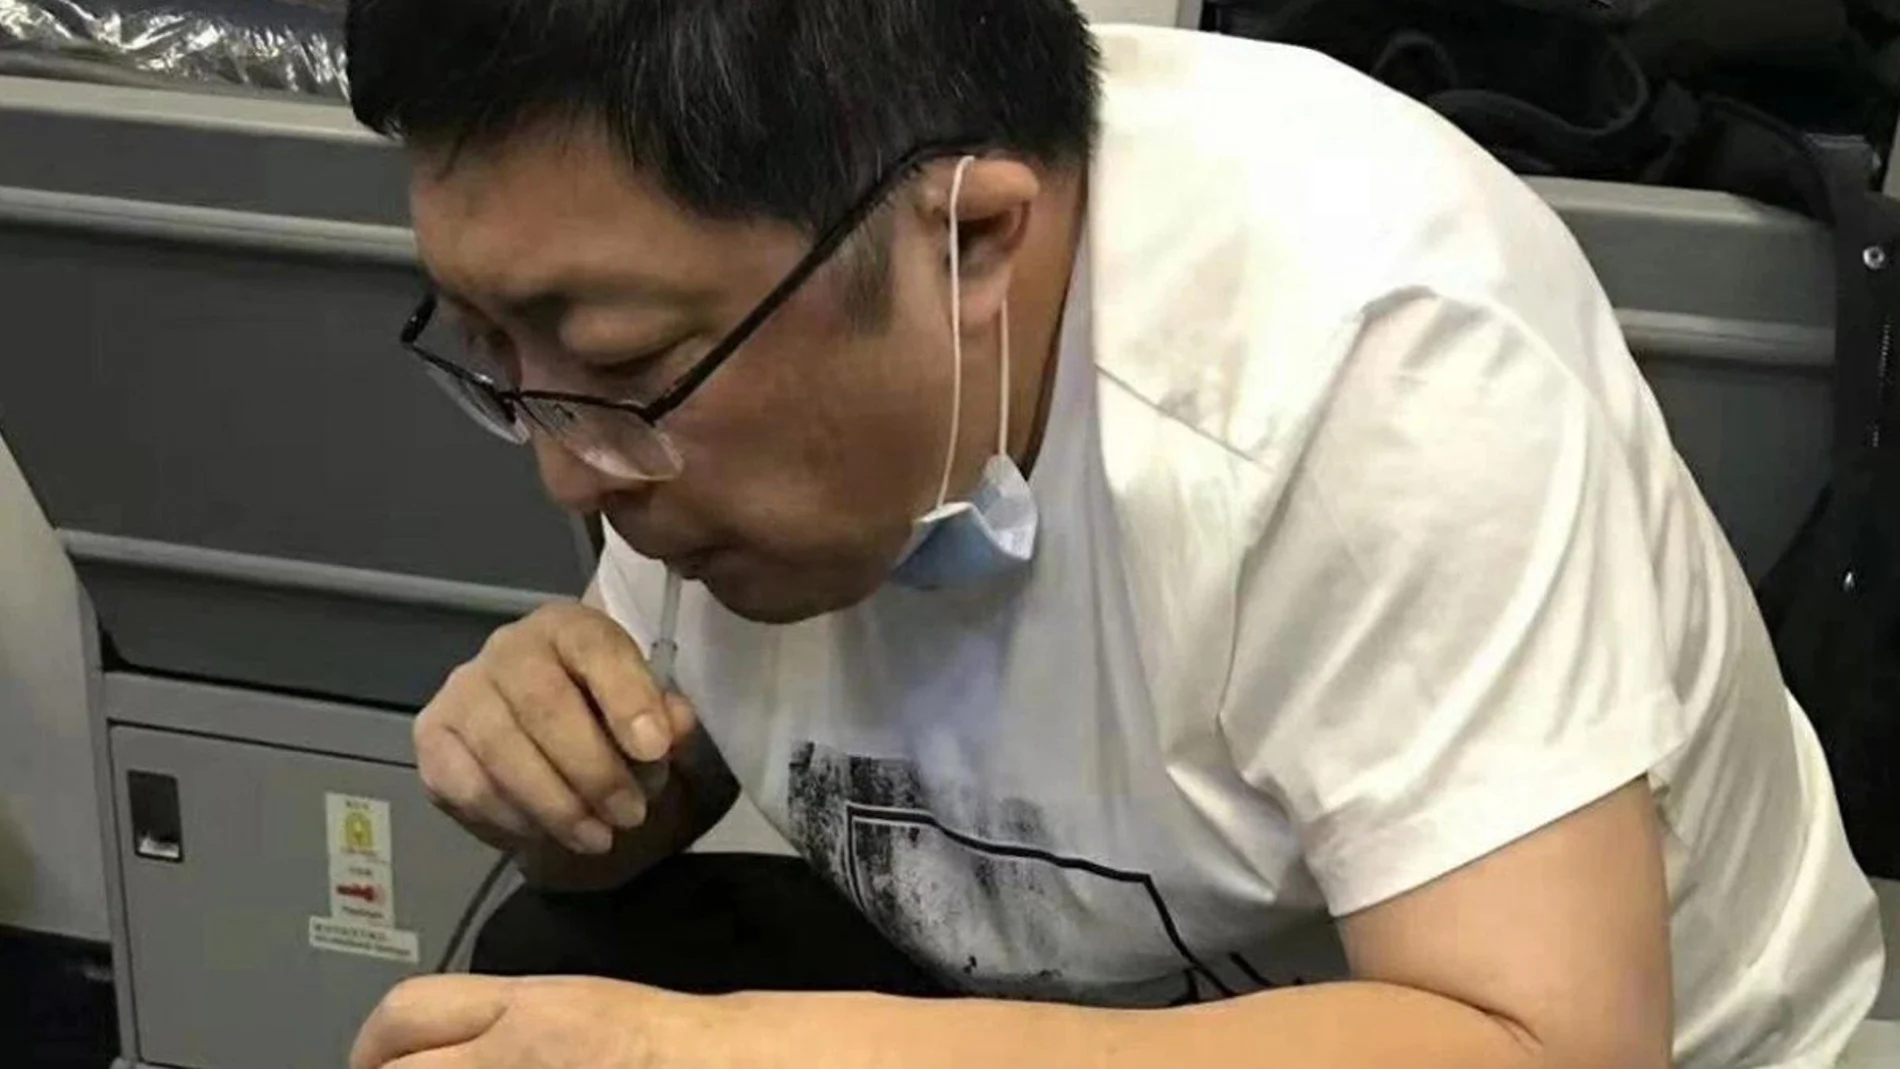 El doctor Zhang estuvo 37 minutos extrayendo la orina del paciente